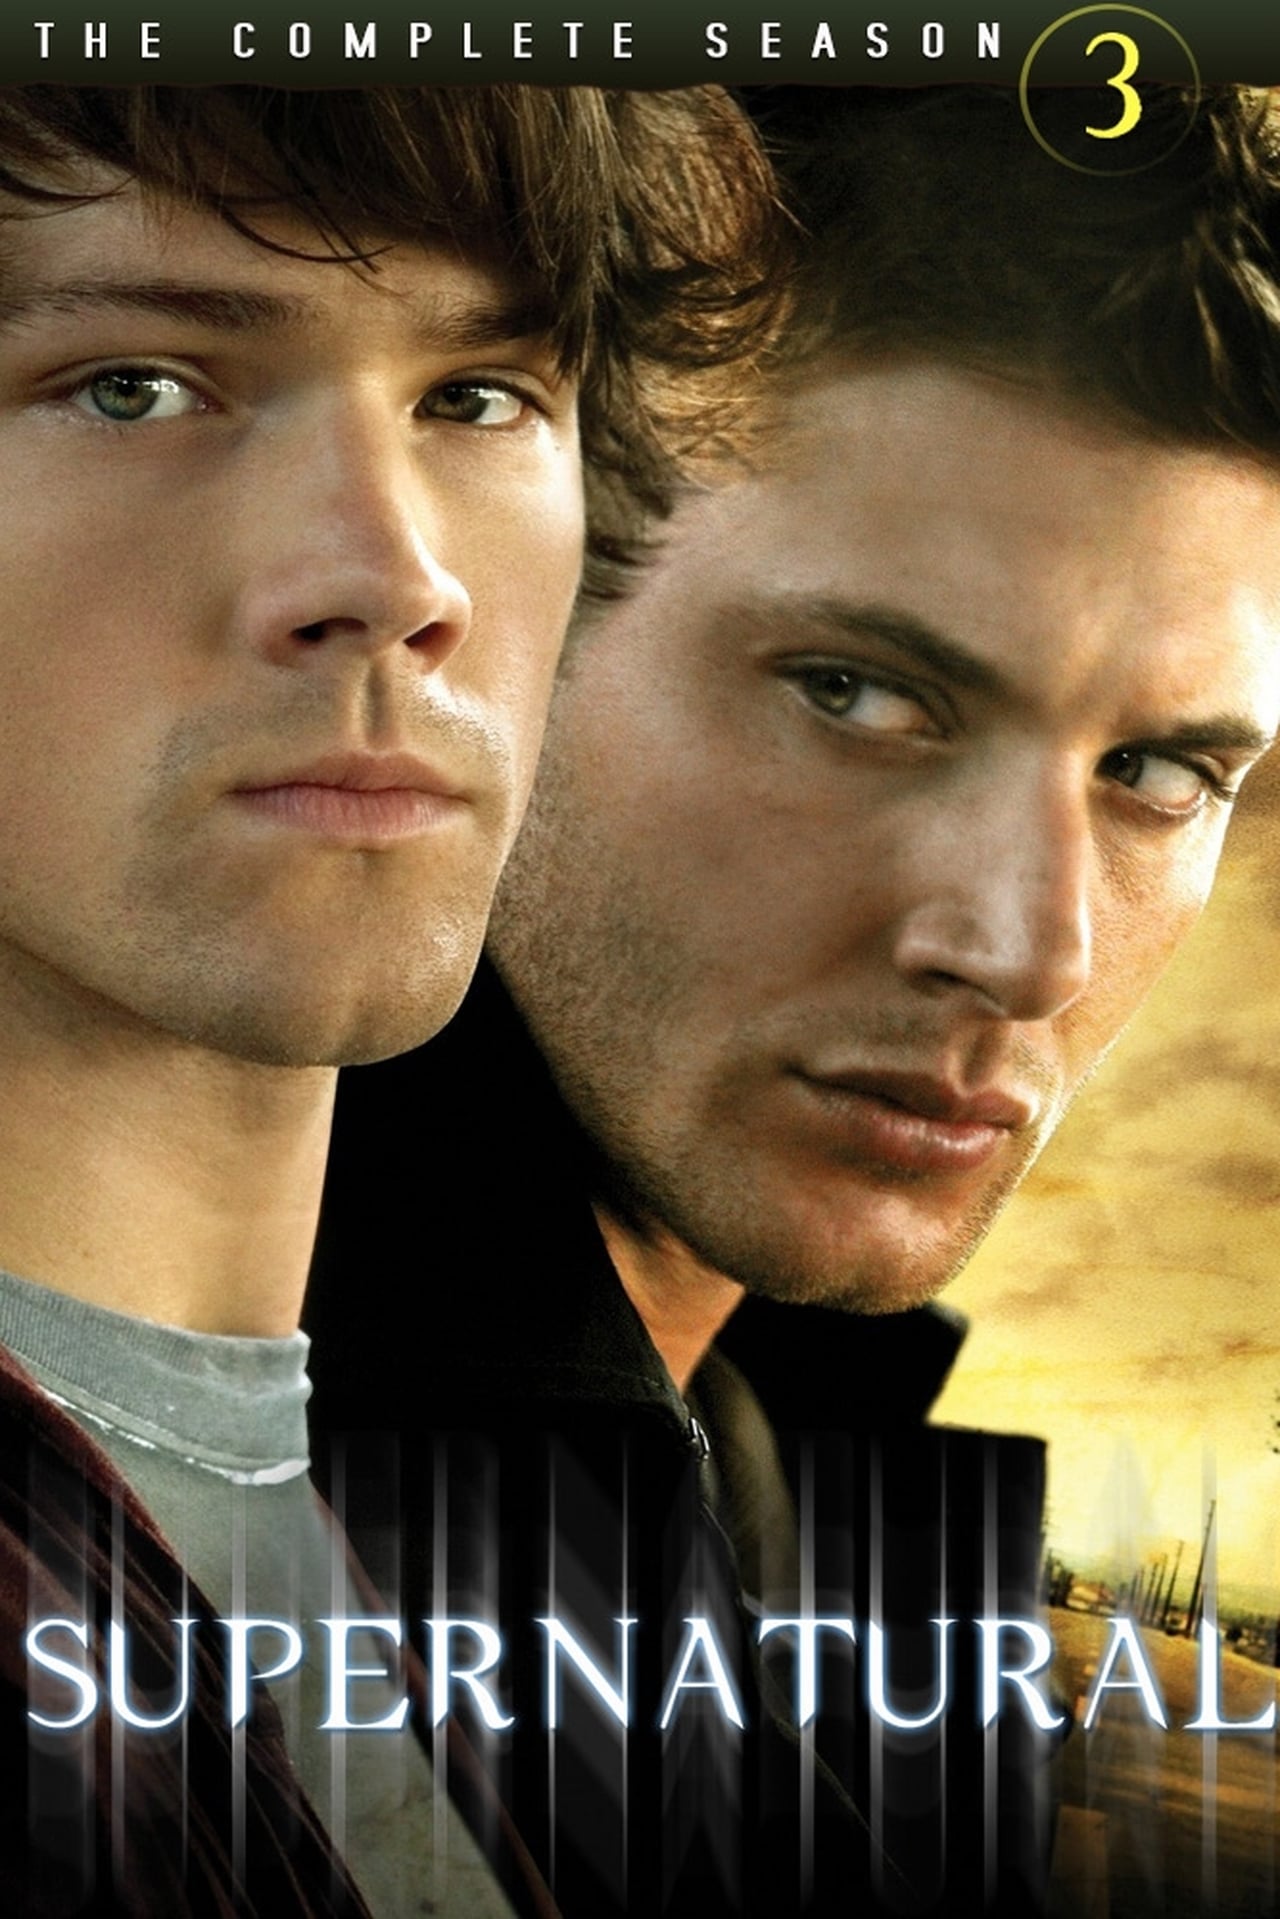 Supernatural (2007)